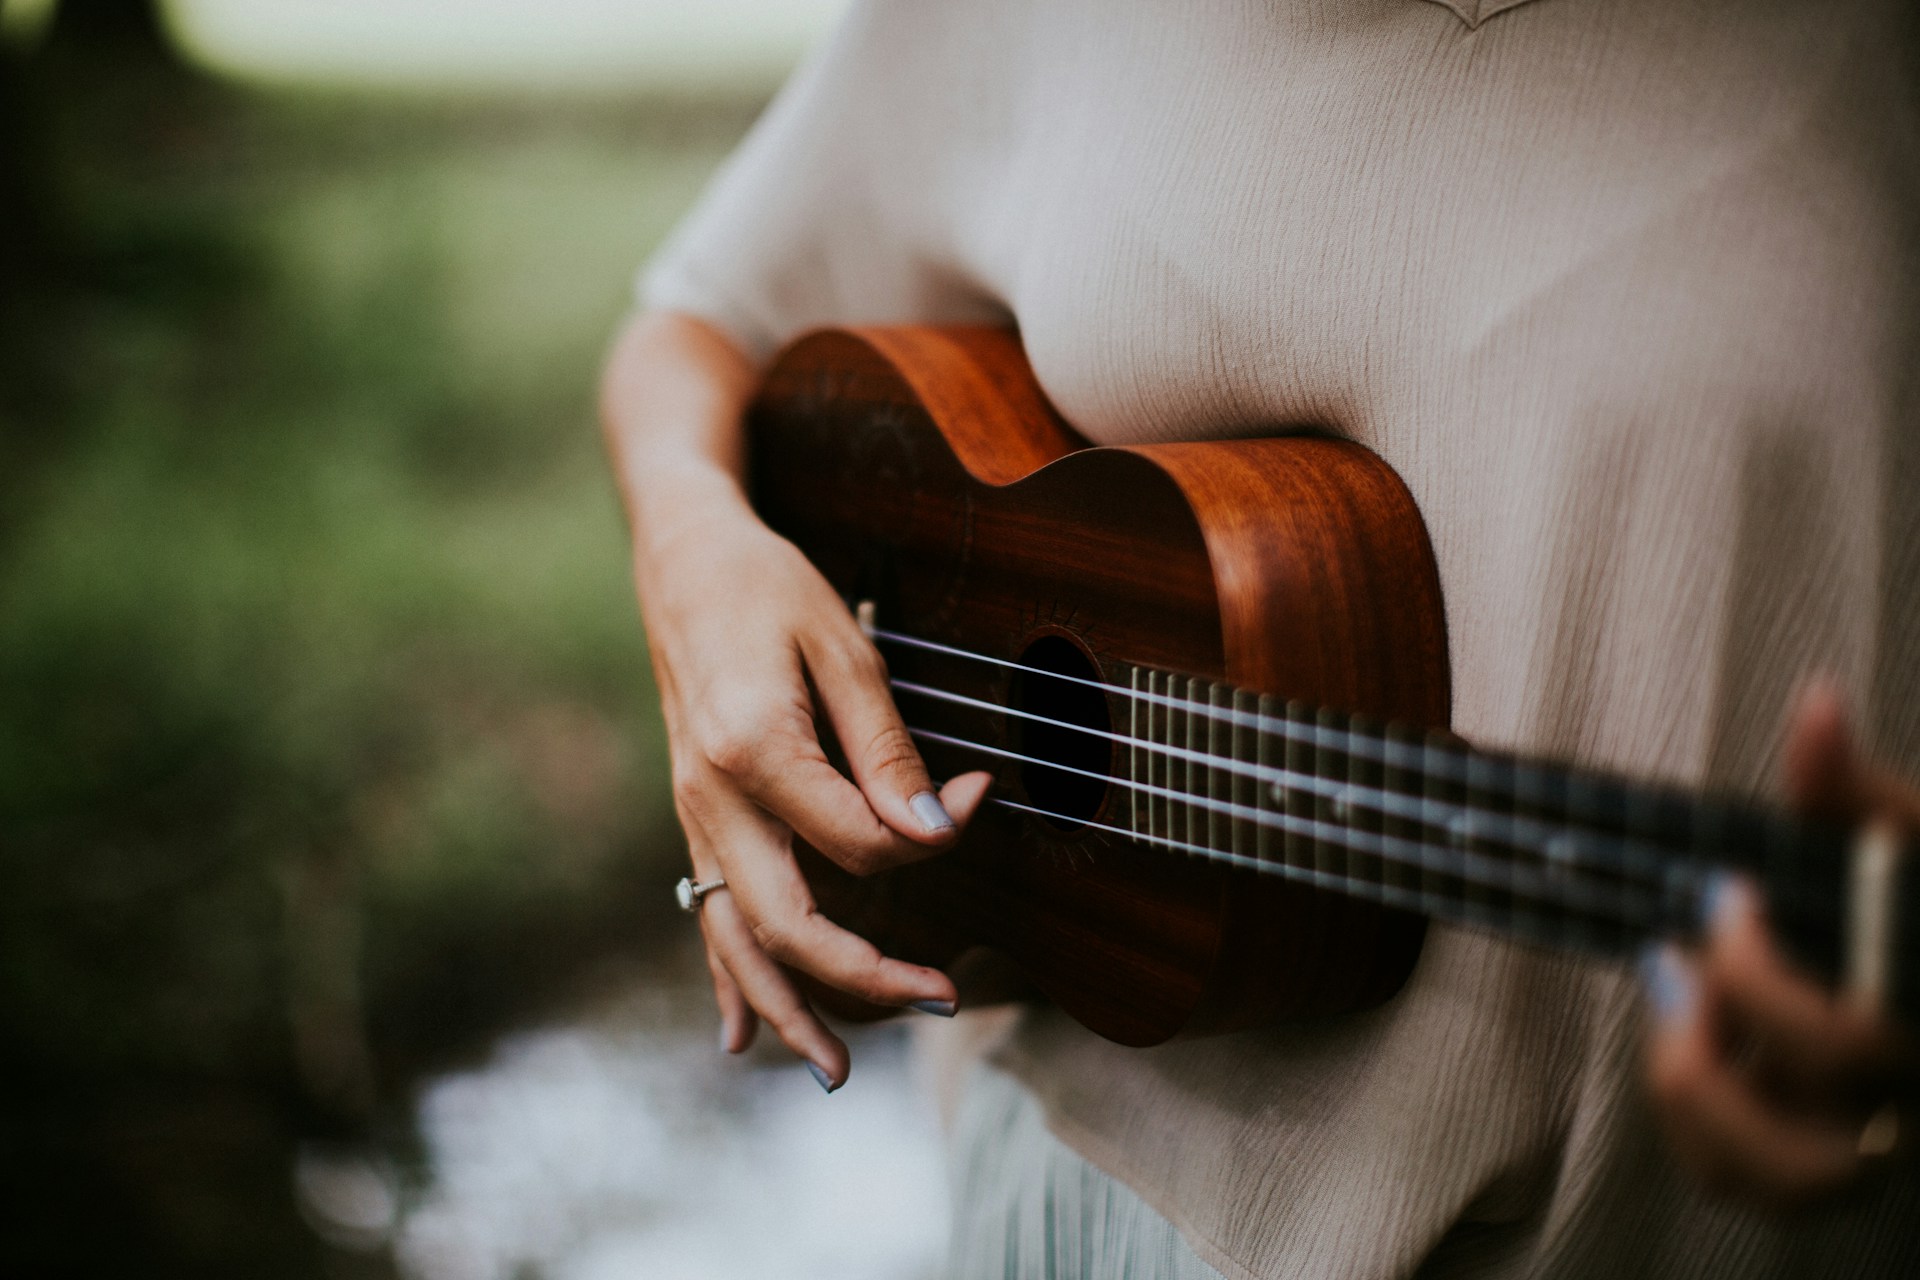 Opi soittamaan ukulelea 5 minuutissa!